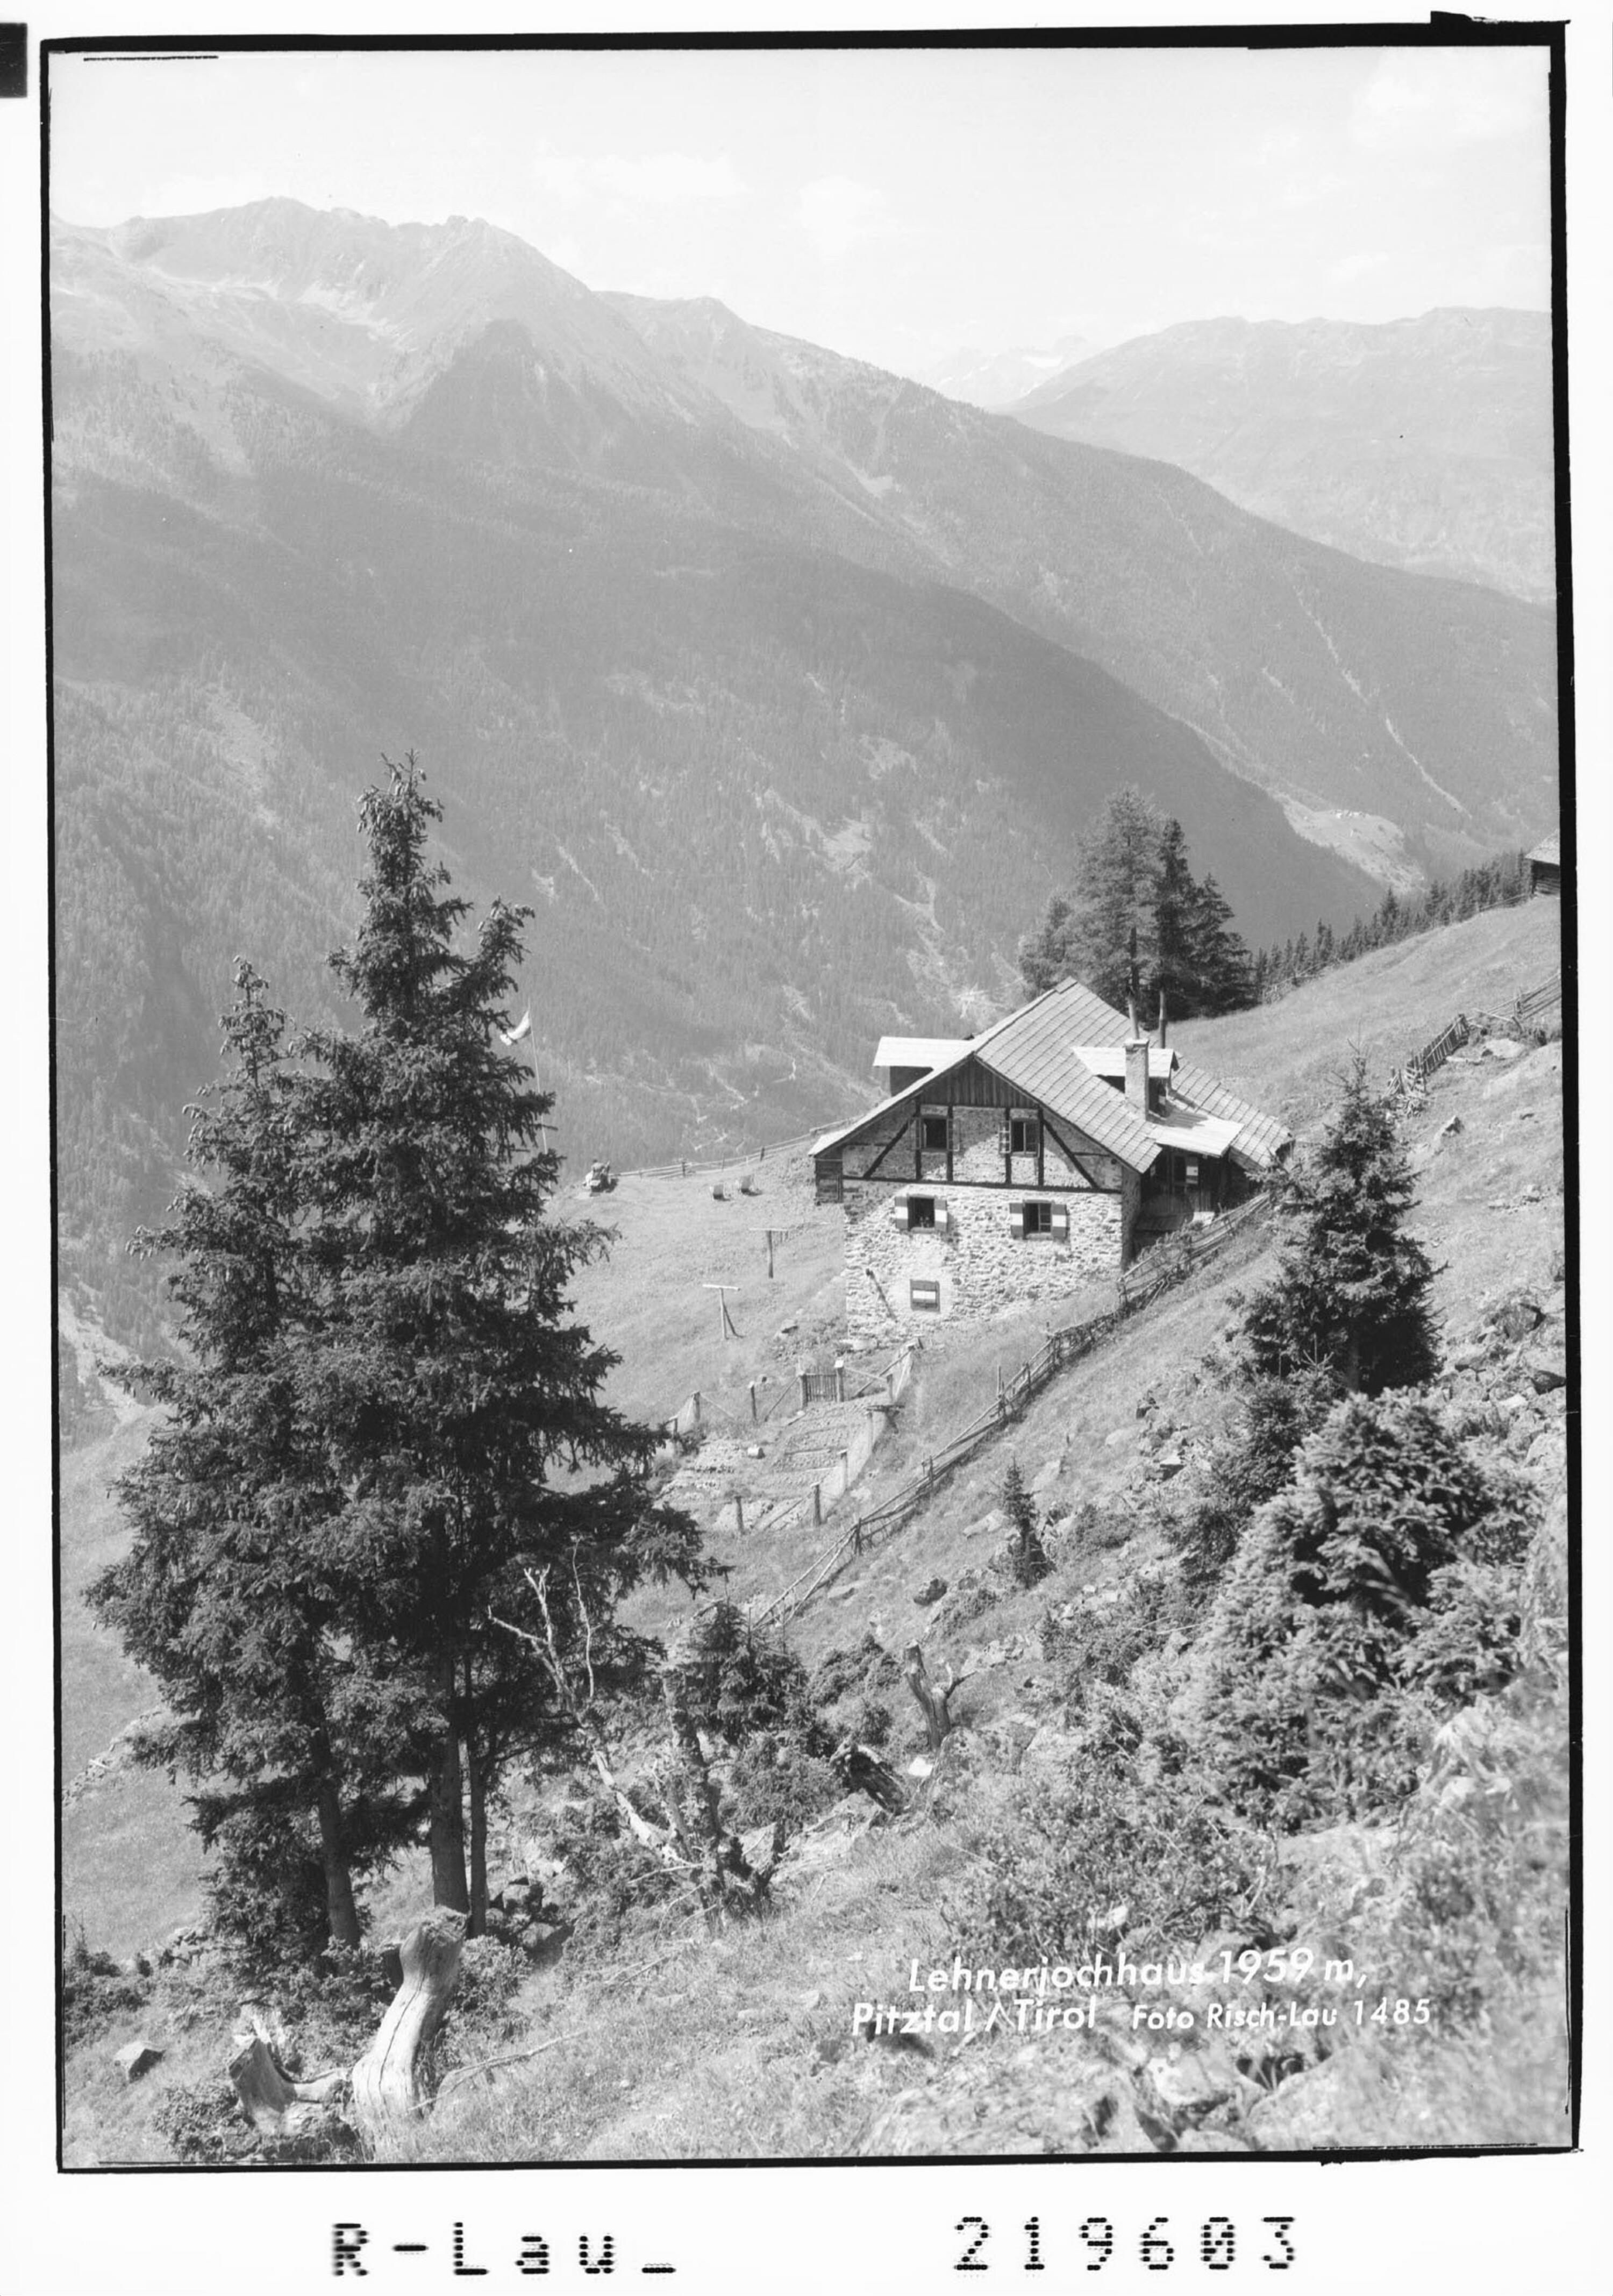 Lehnerjochhaus 1959 m, Pitztal / Tirol></div>


    <hr>
    <div class=